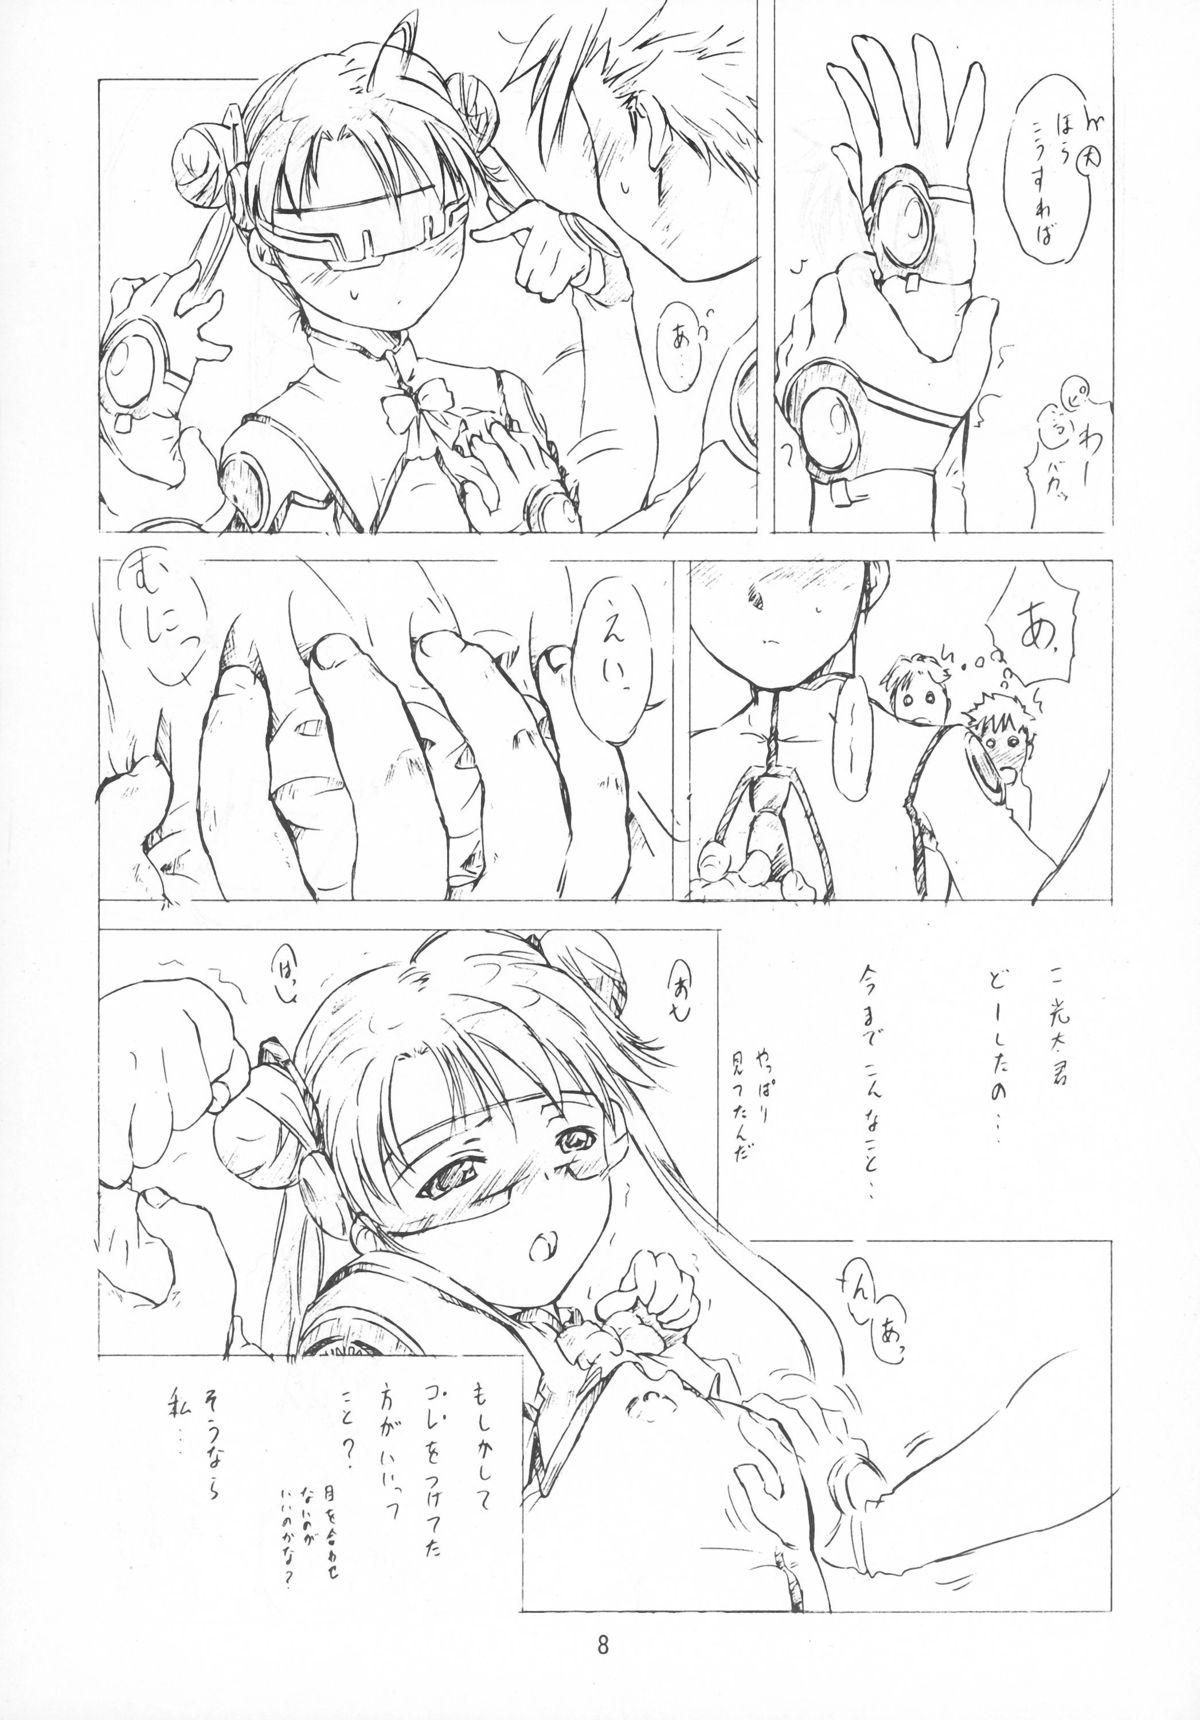 Foundation Page 8 Of 50 sakura taisen hentai manga, Foundation Page 8 Of 50...